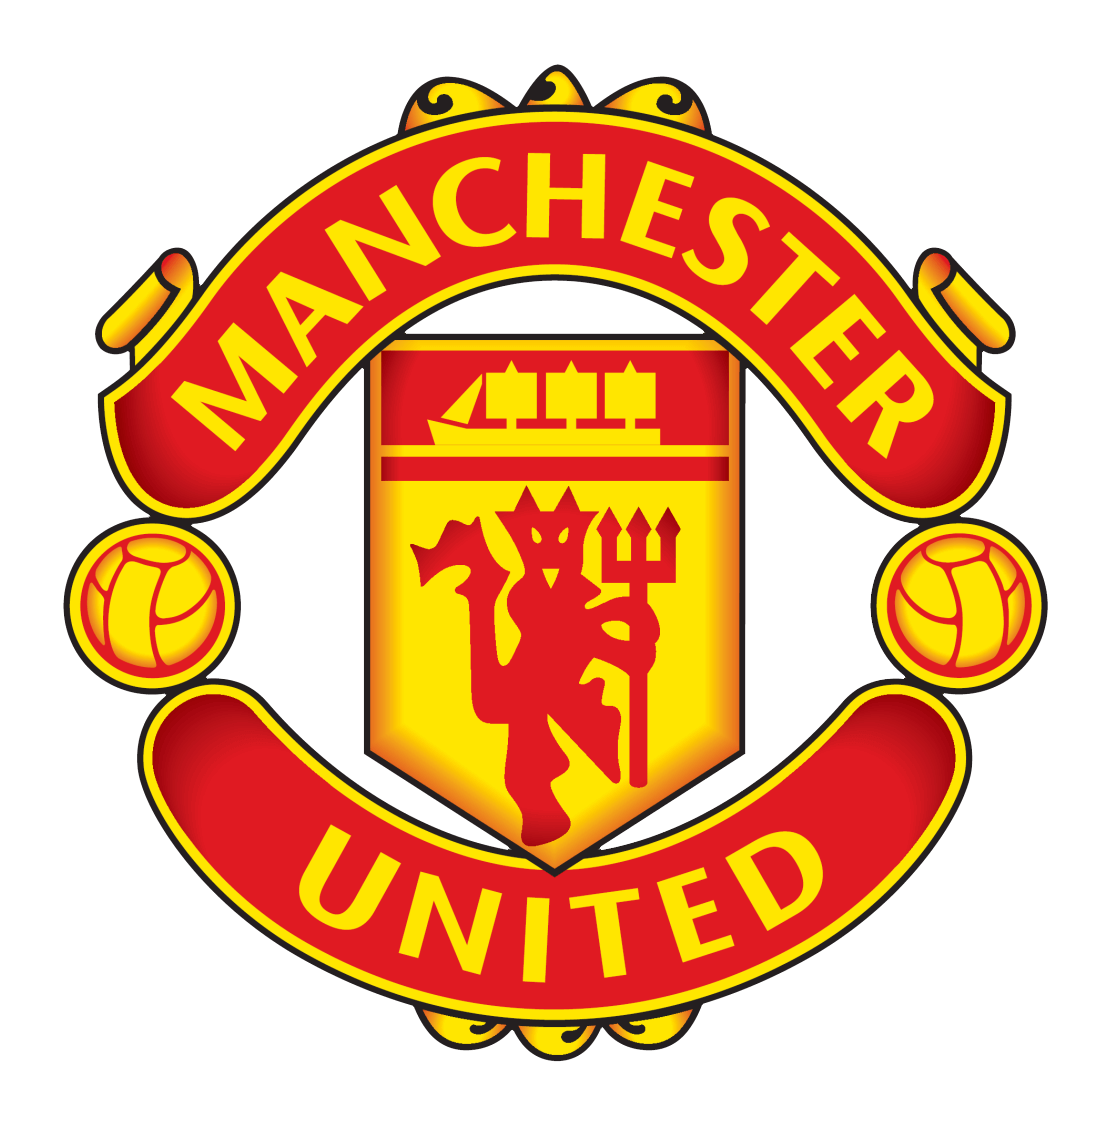 Manchester United logo, logotype